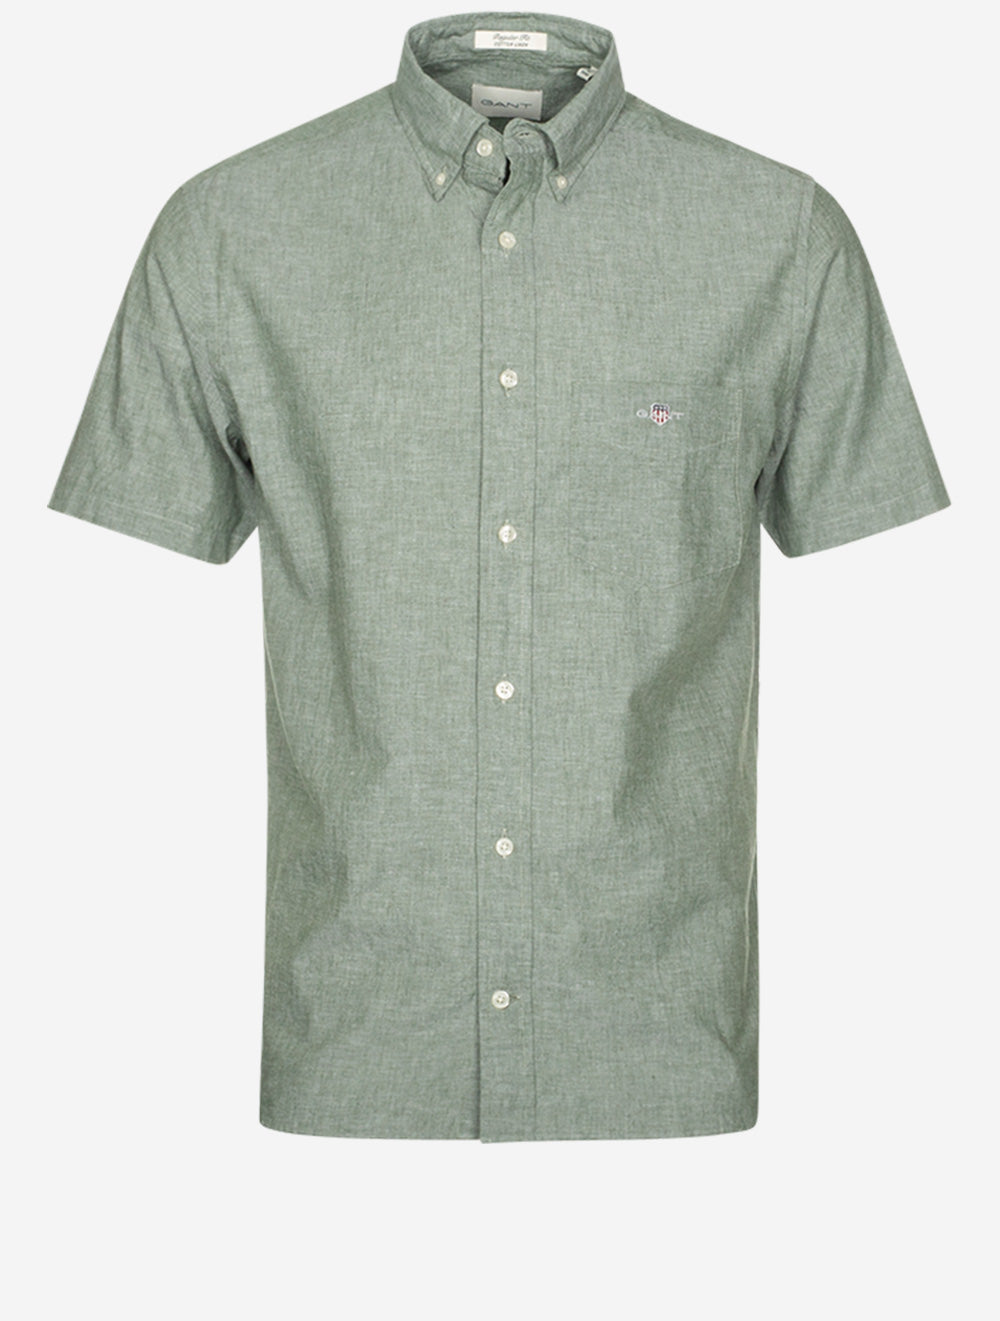 Regular Cotton Linen Short Sleeve Shirt Pine Green